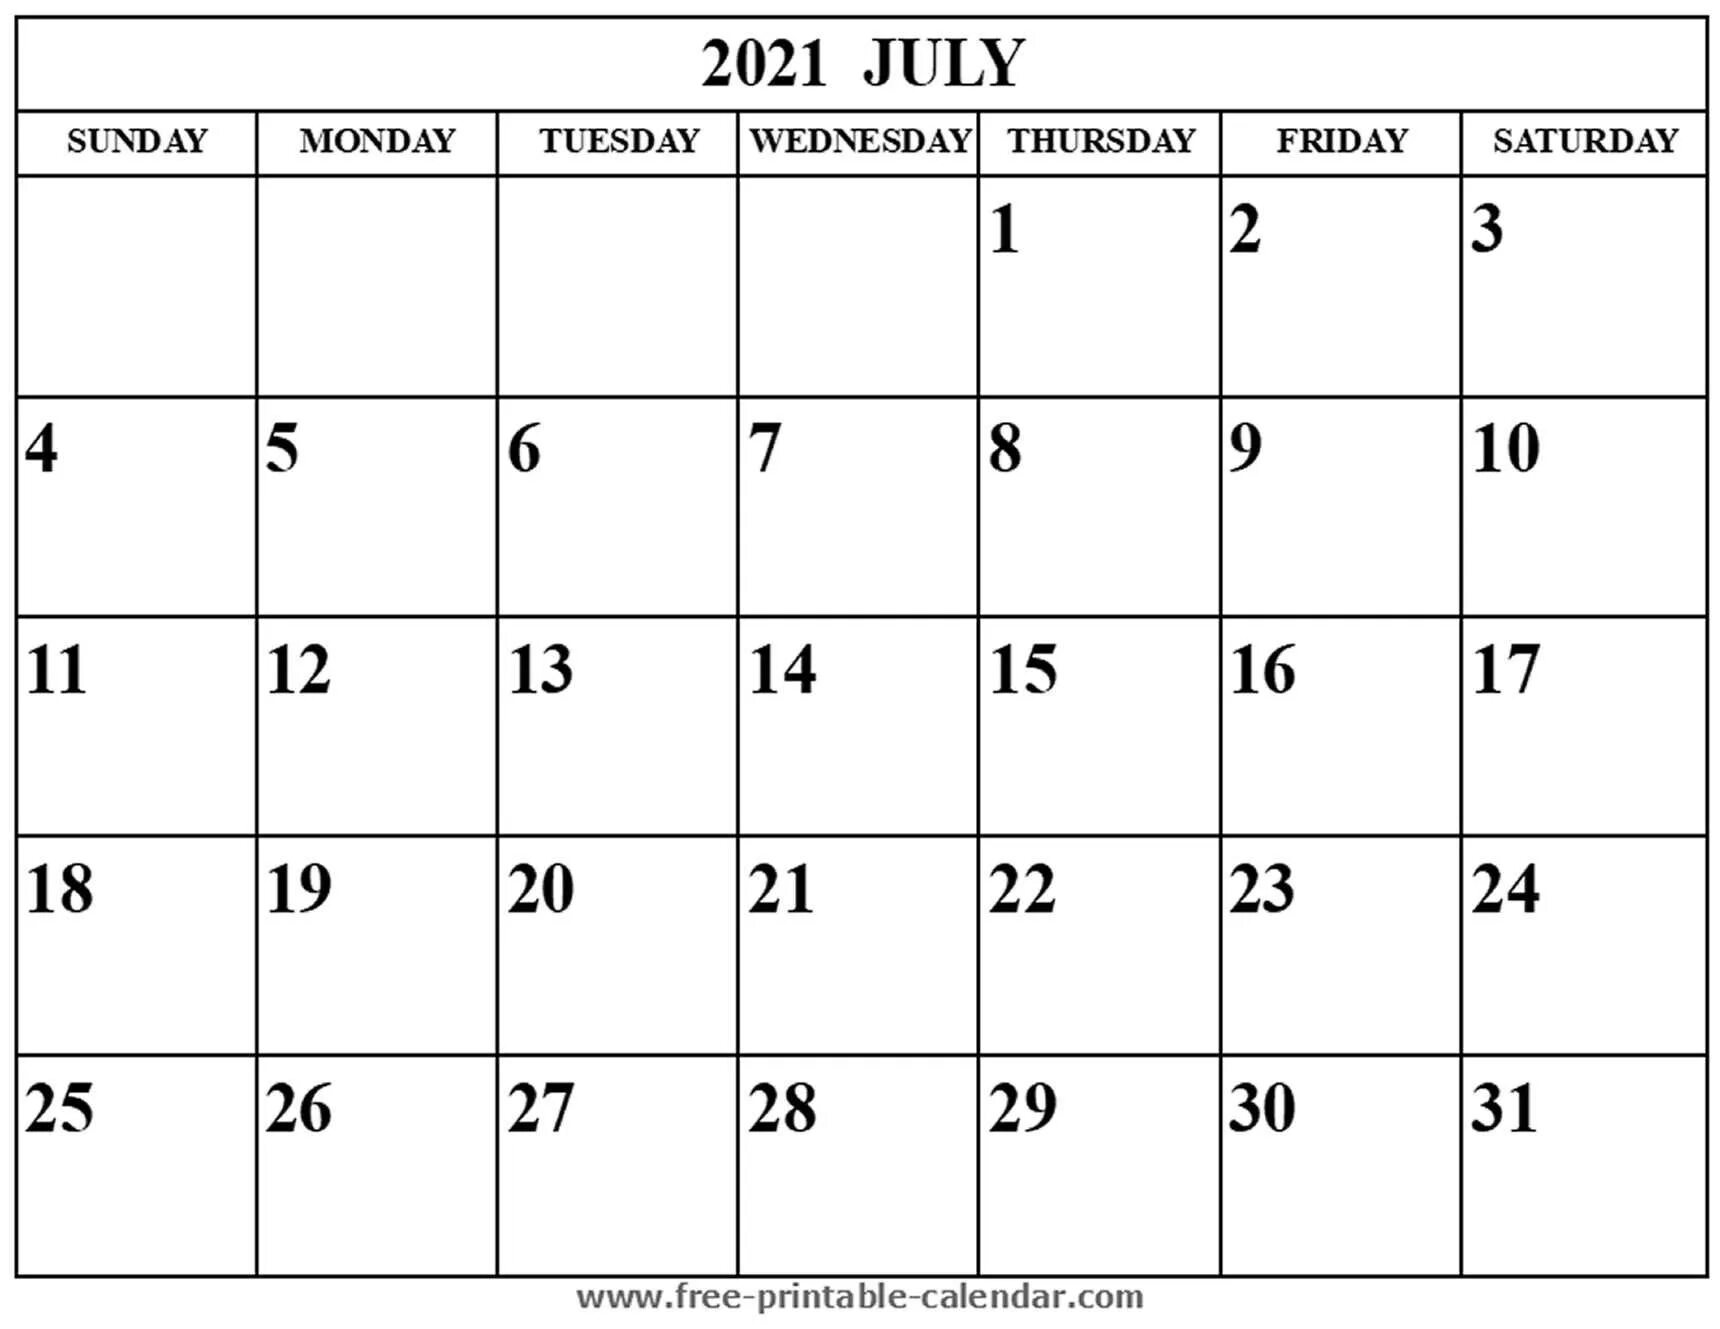 Календарь март 2017. Август календарь для заметок. Август 2021 года календарь. Календарь август пустой. Календарь на август для записей.